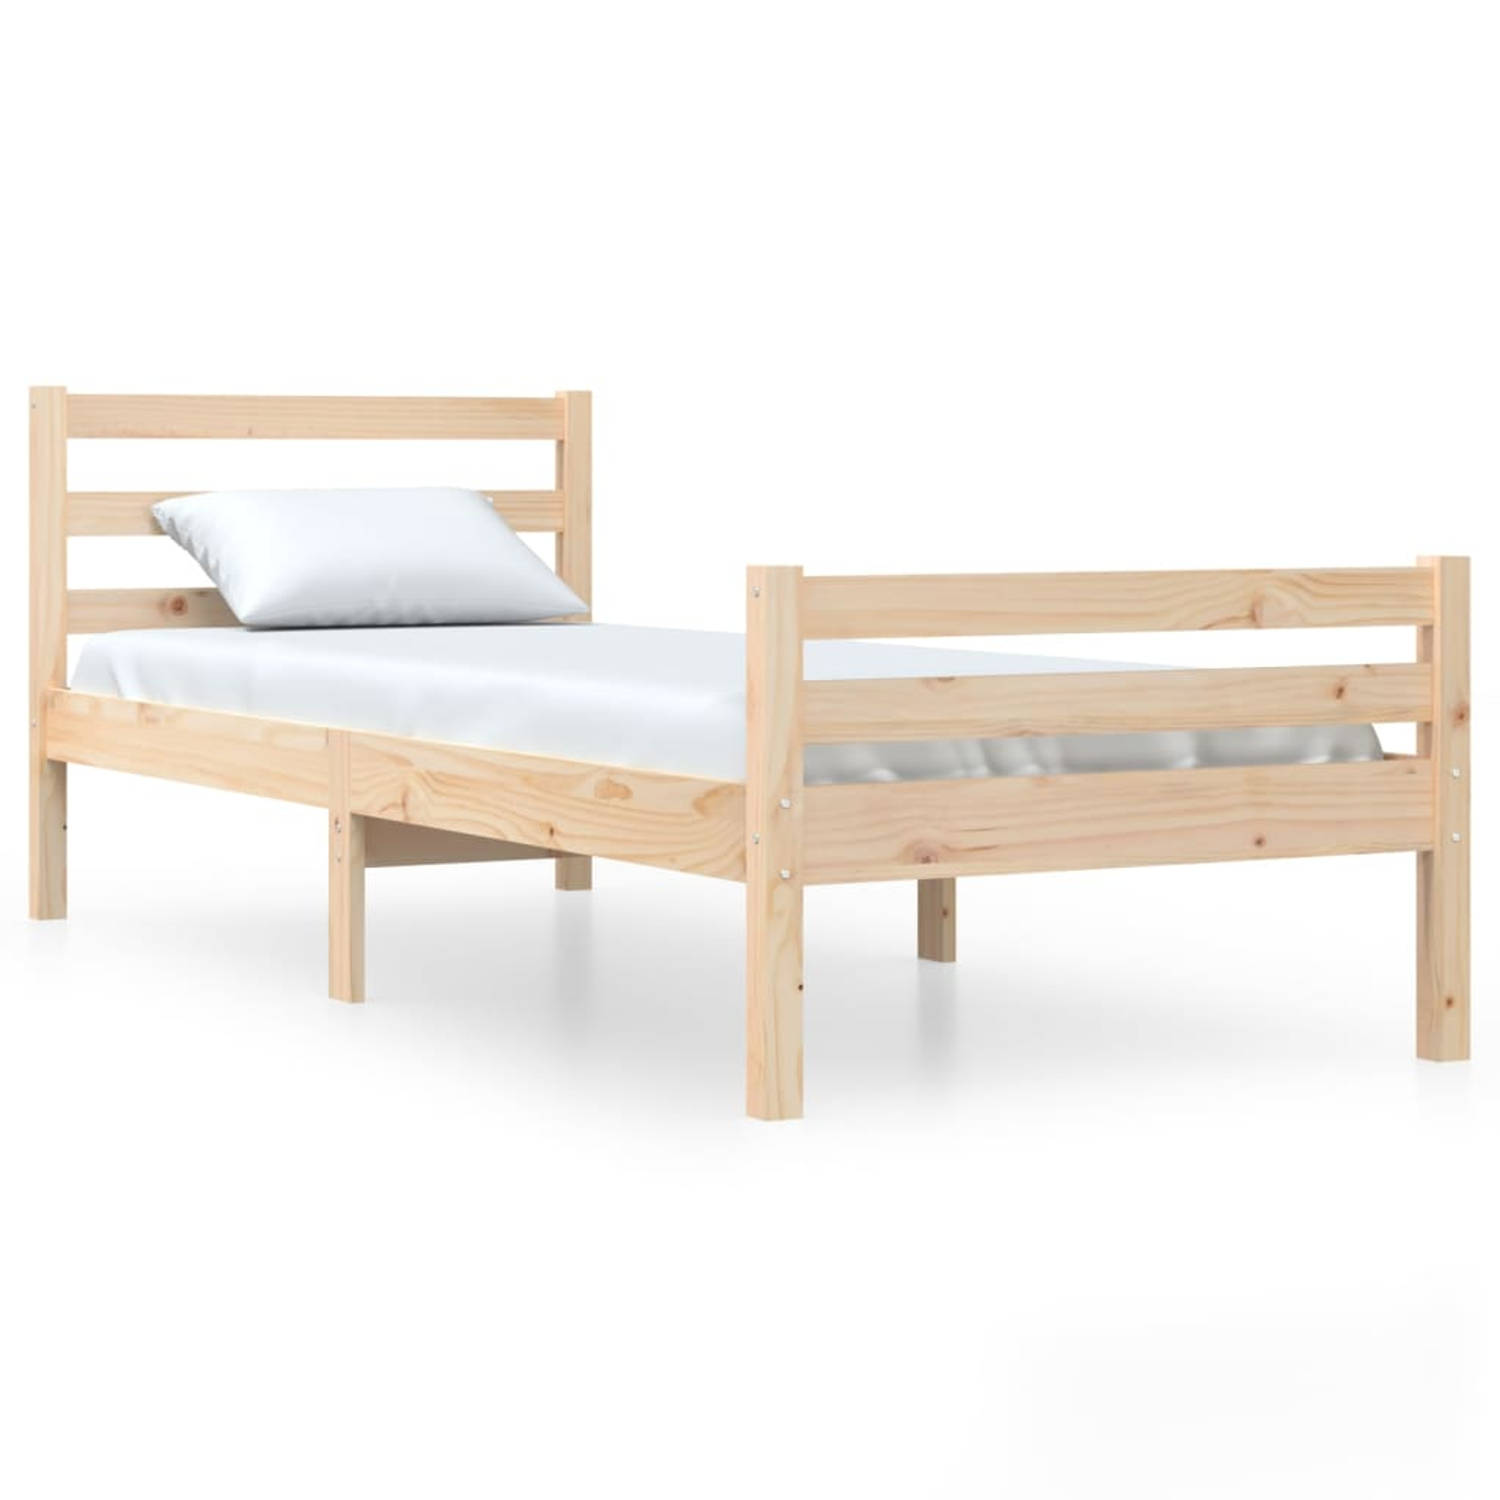 The Living Store Bedframe massief hout 90x200 cm - Bedframe - Bedframes - Bed - Bedbodem - Ledikant - Bed Frame - Massief Houten Bedframe - Slaapmeubel - Eenpersoonsbed - Bedden -